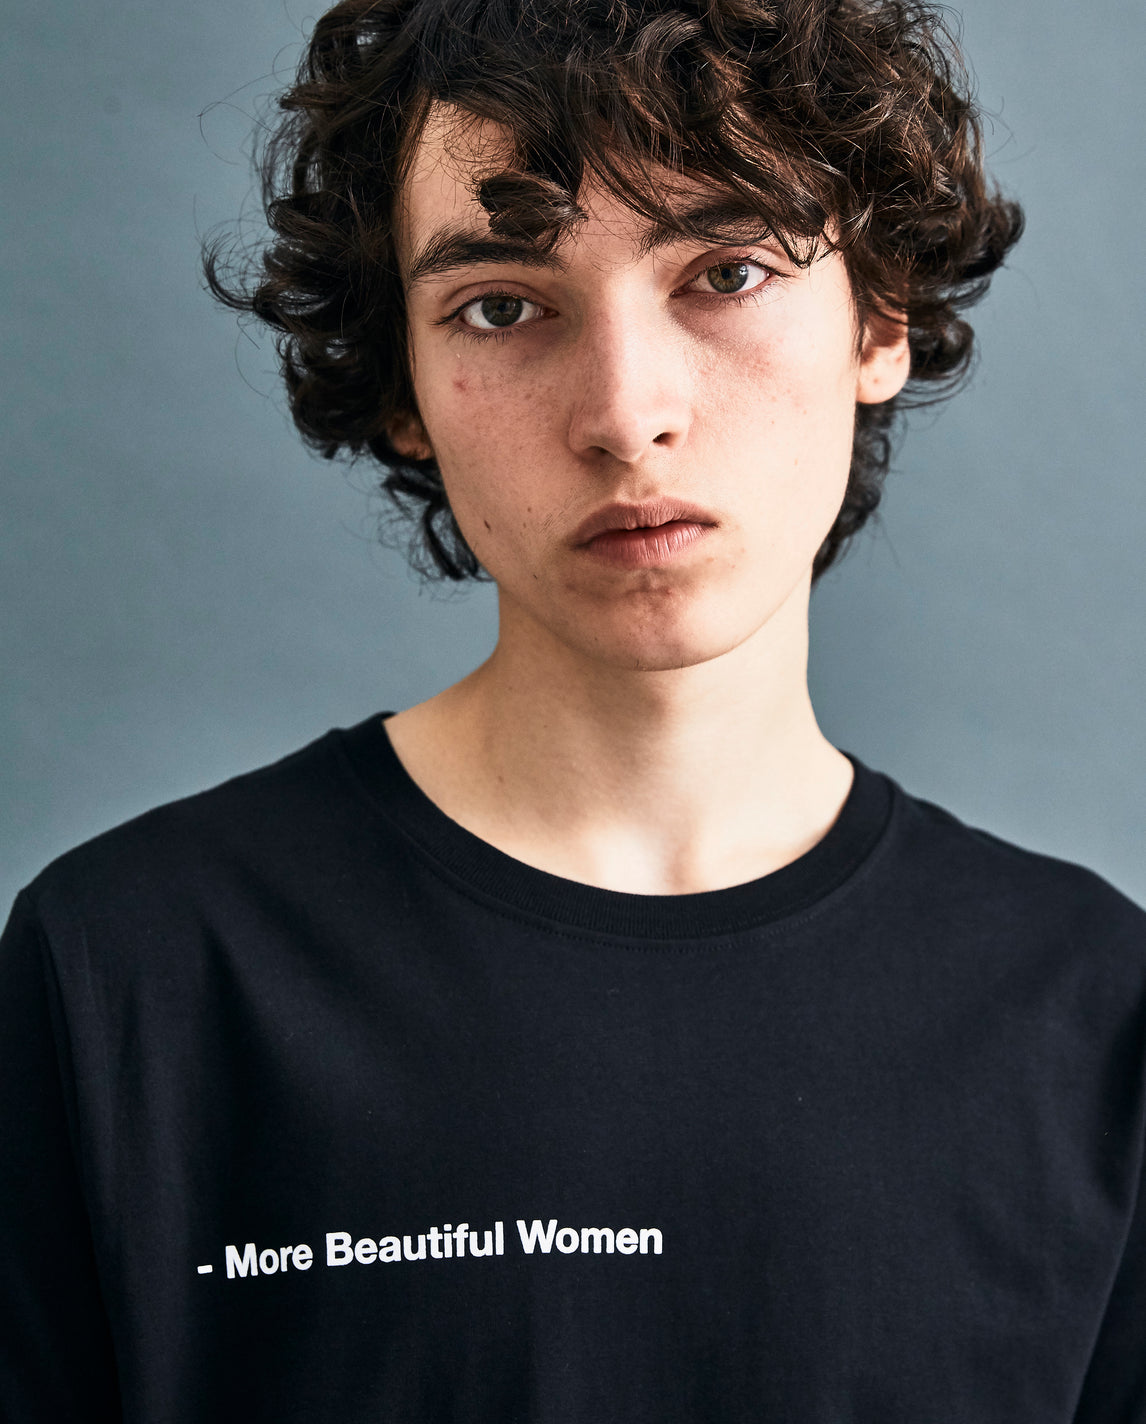 Black 'More Beautiful Women' T-shirt